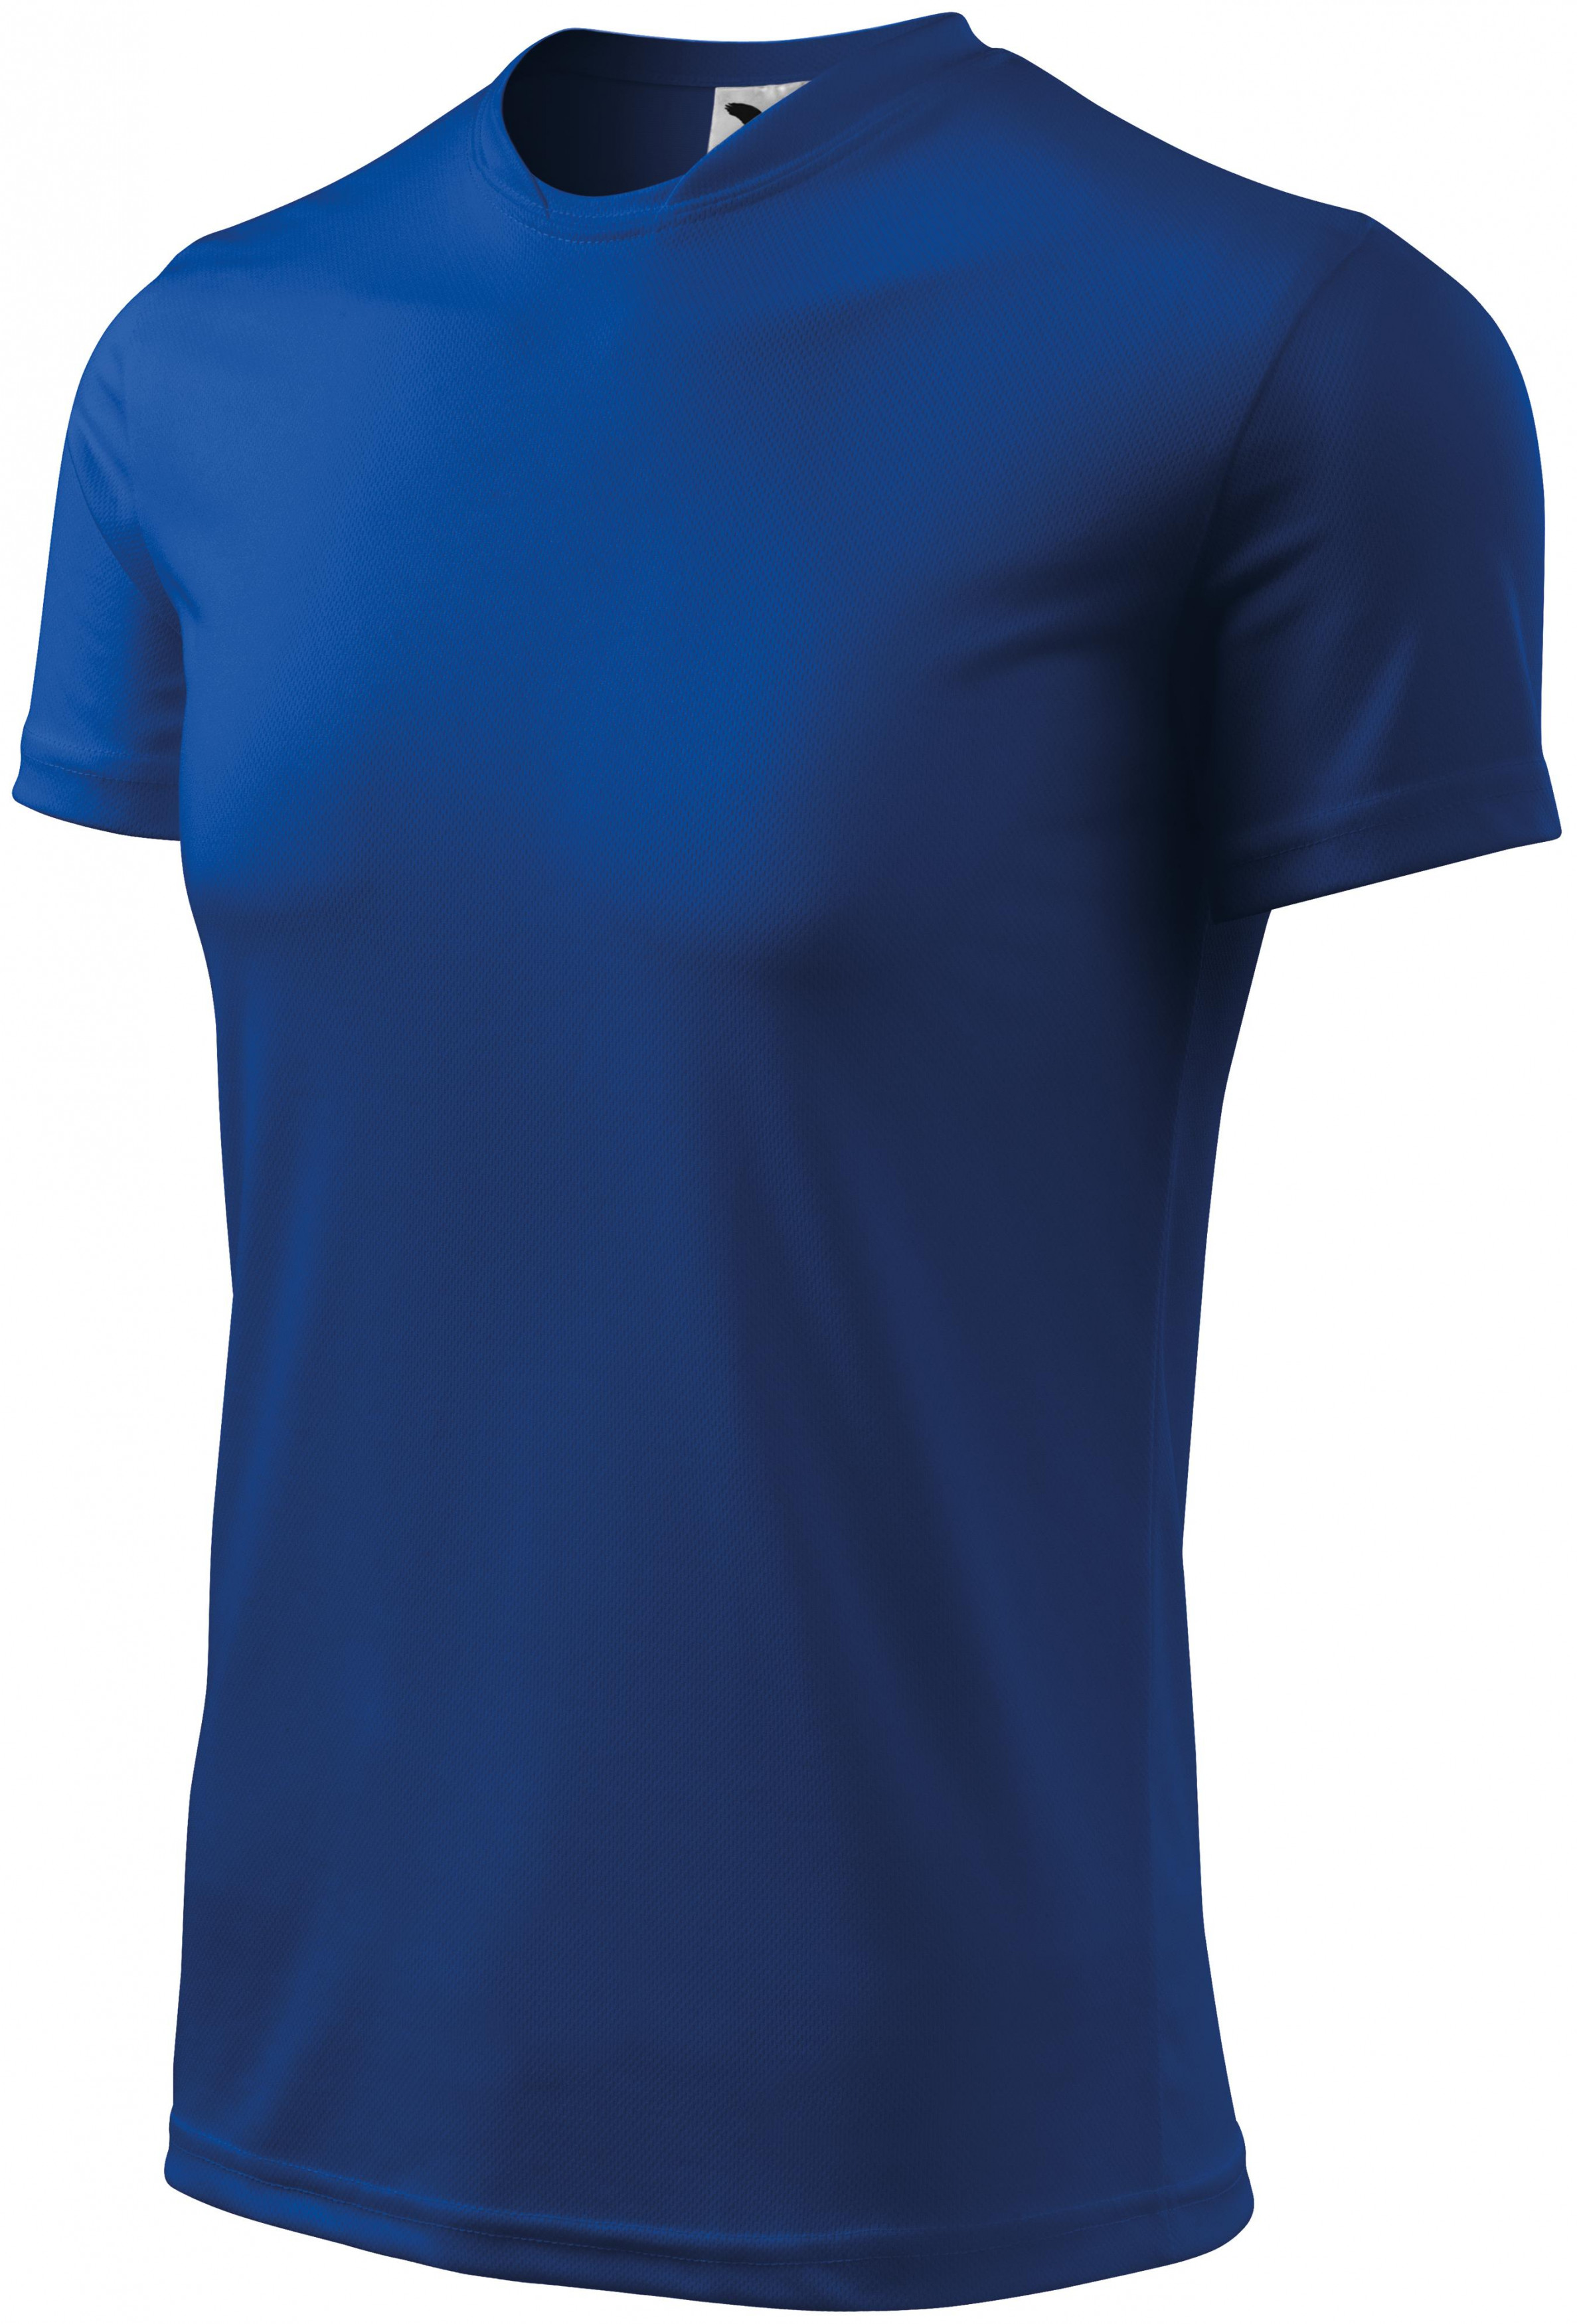 Športové tričko detské, kráľovská modrá, 122cm / 6rokov